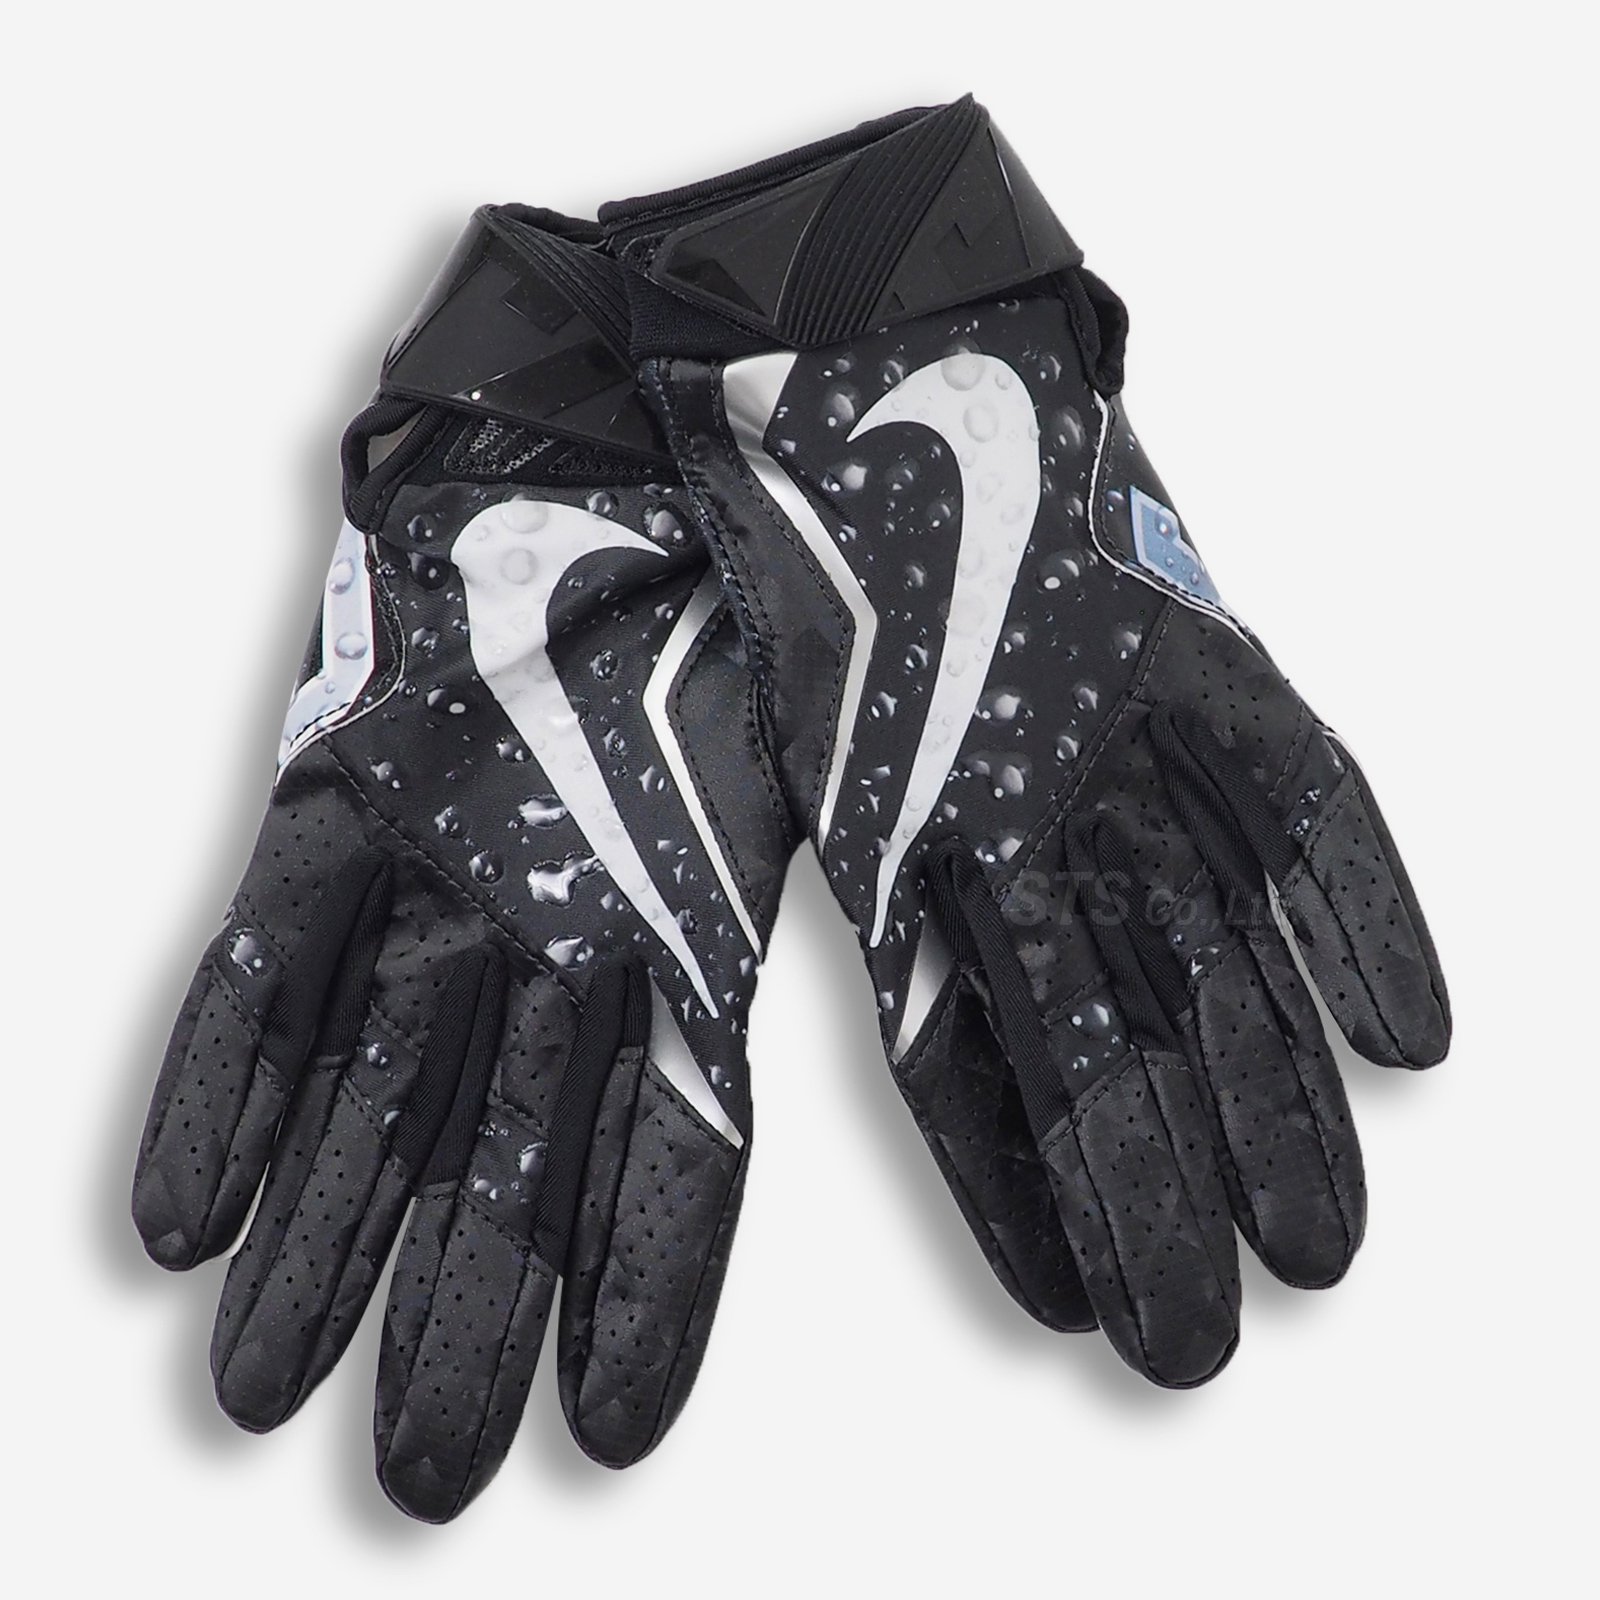 Supreme/Nike Vapor Jet 4.0 Football Gloves - ParkSIDER